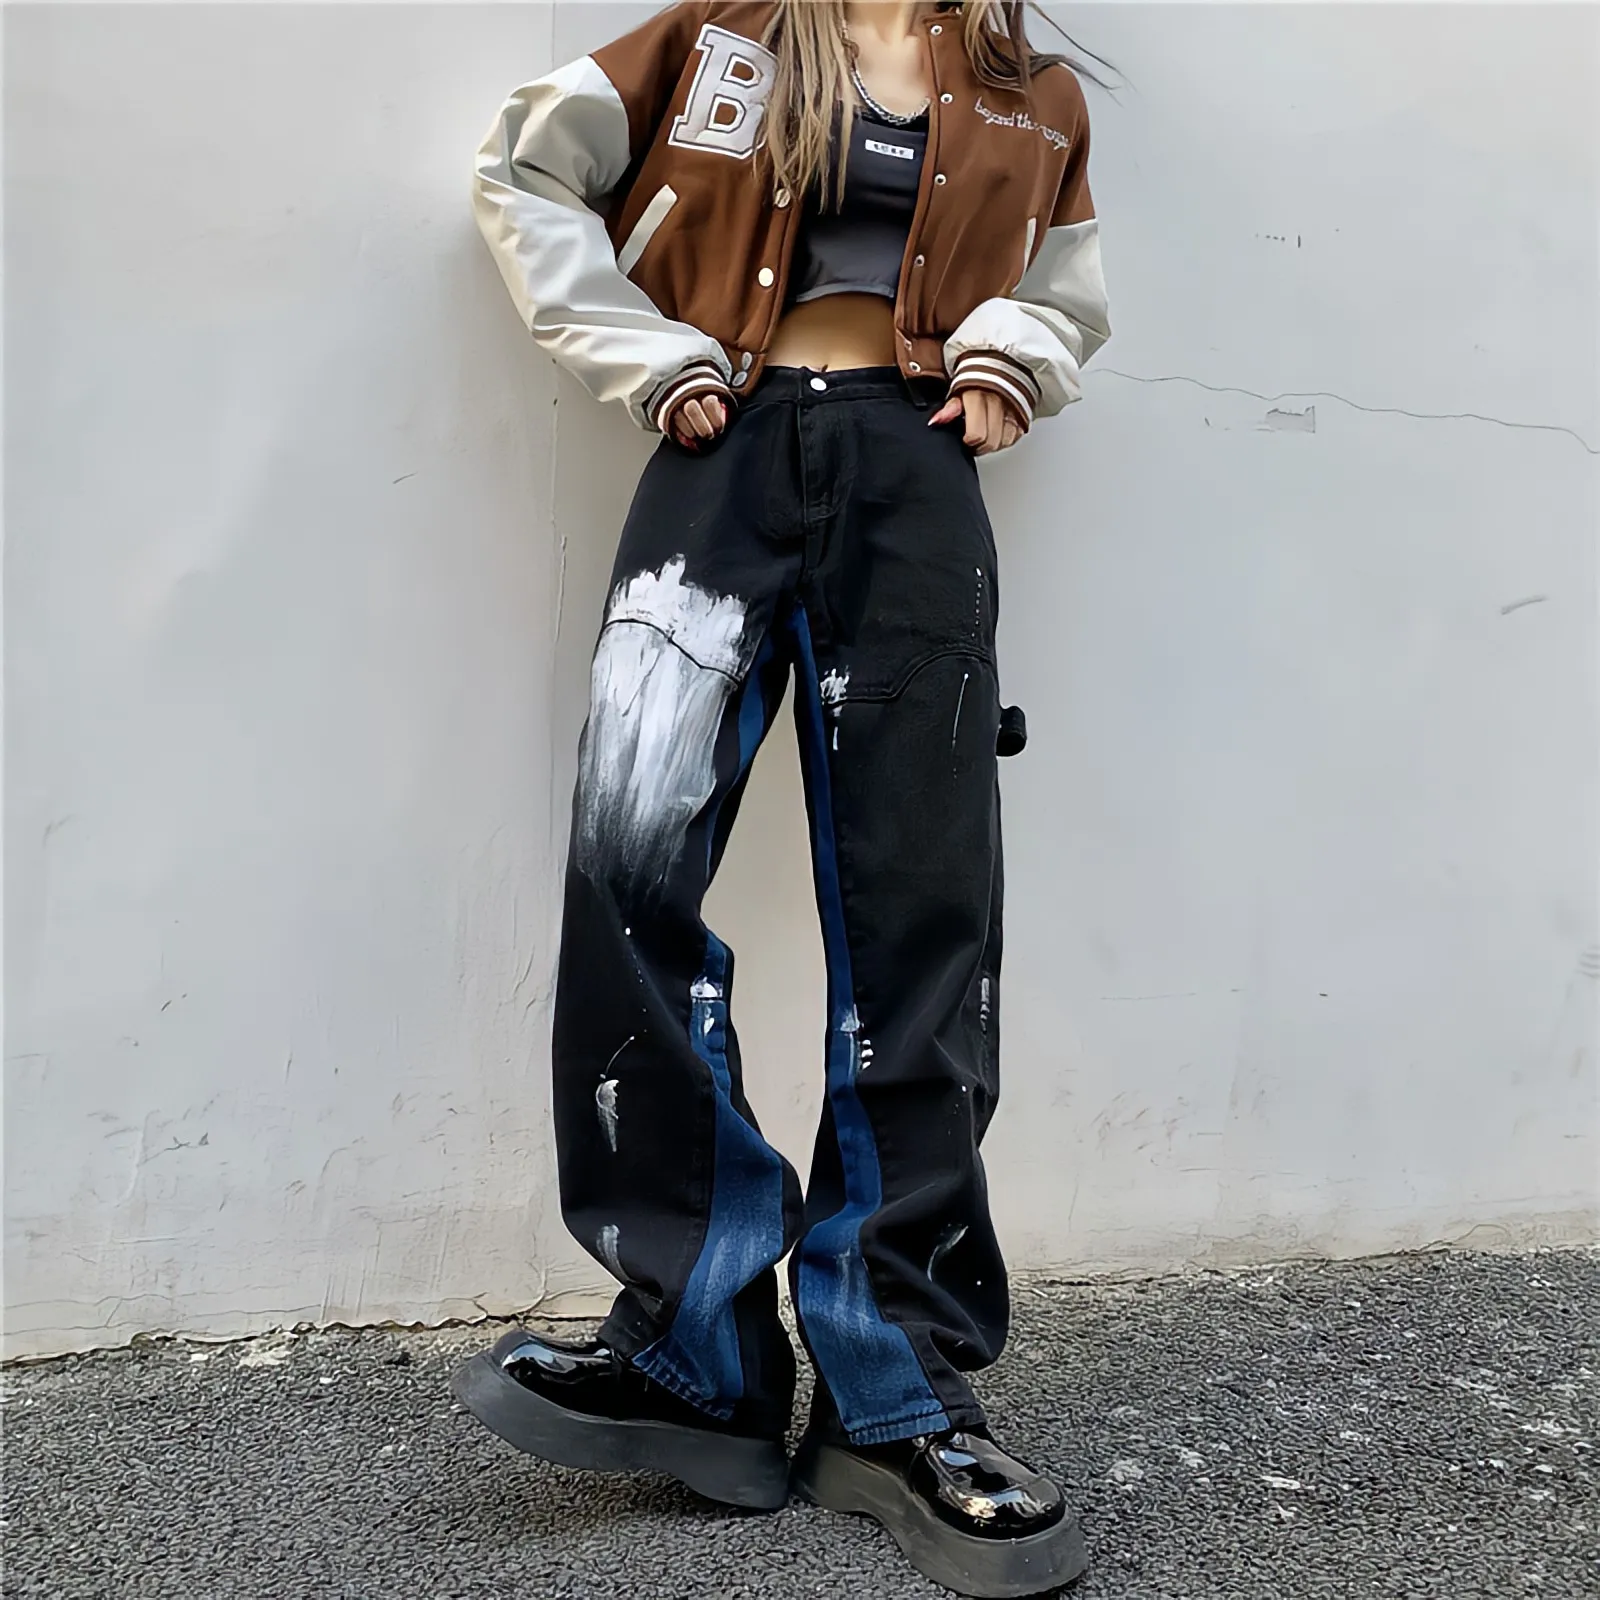 QNPQYX Nouveau Style Gothique Noir Baggy Jeans Femme Graffiti Peinture Vintage Pantalon Streetwear Y2k Oversize Taille Haute Jambe Large Denim Pantalon